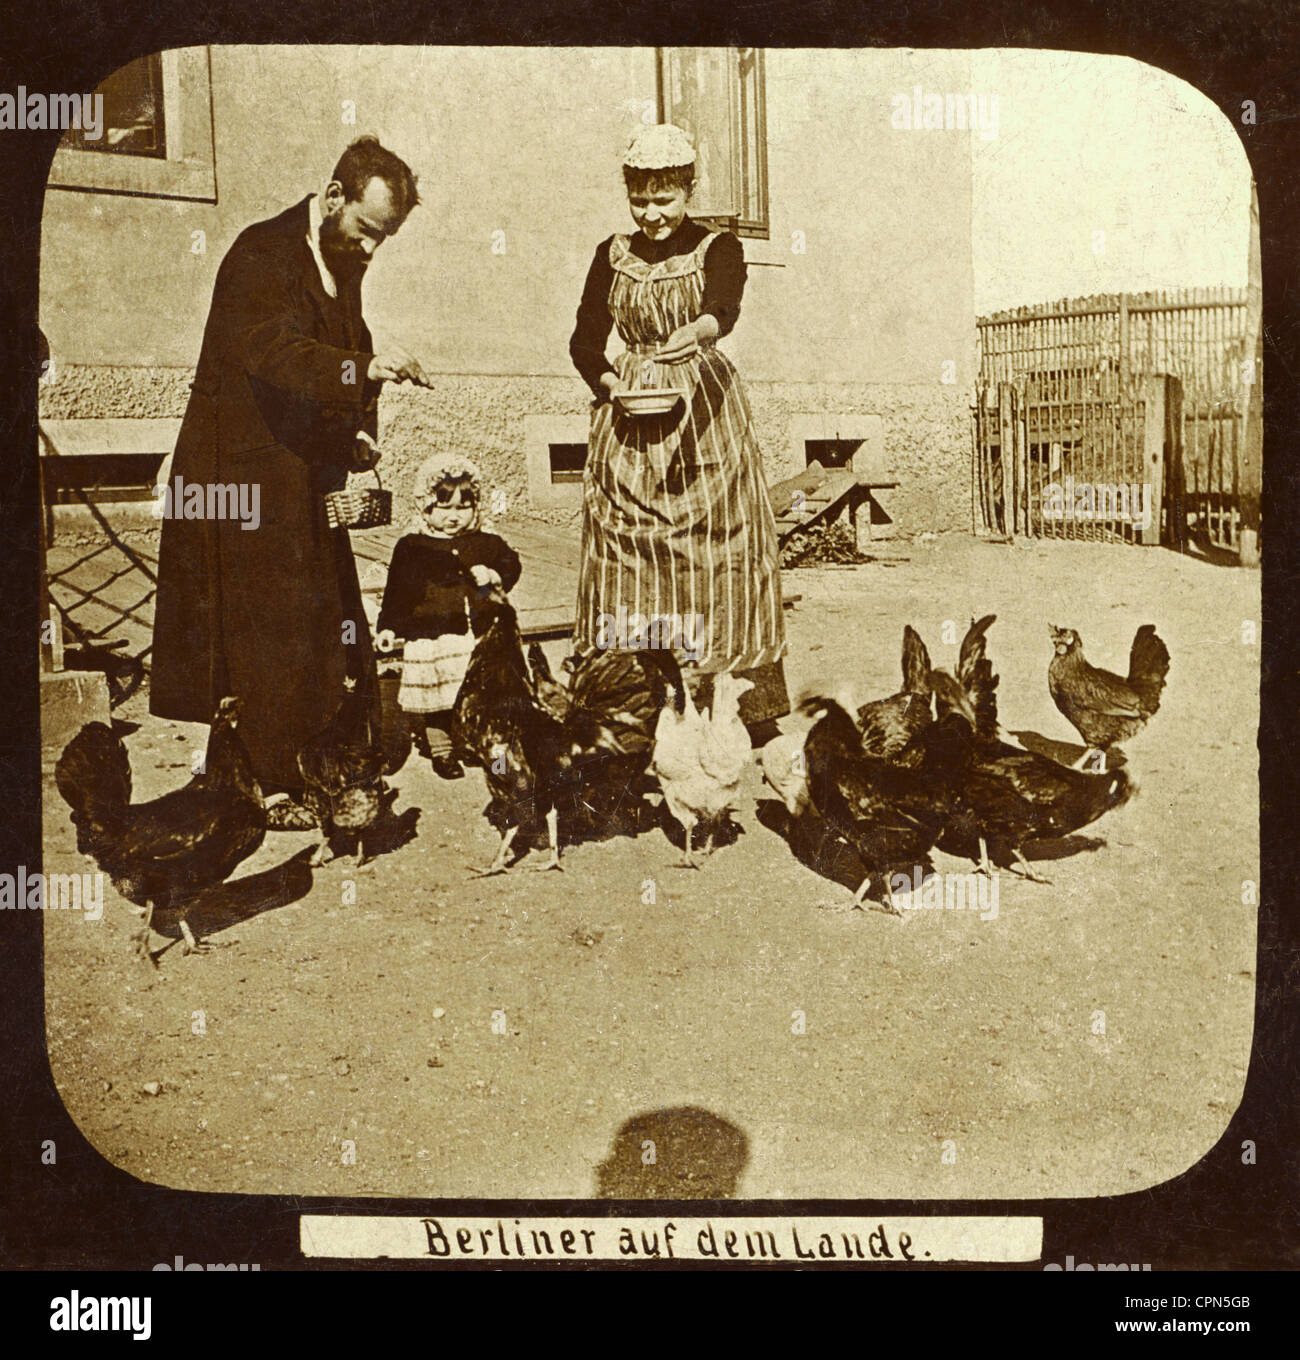 Geografía / viajes, Alemania, gente, habitantes de Berlín en el país, familia en una granja, alimentación de pollo, alrededor de 1890, Derechos adicionales-Clearences-no disponible Foto de stock